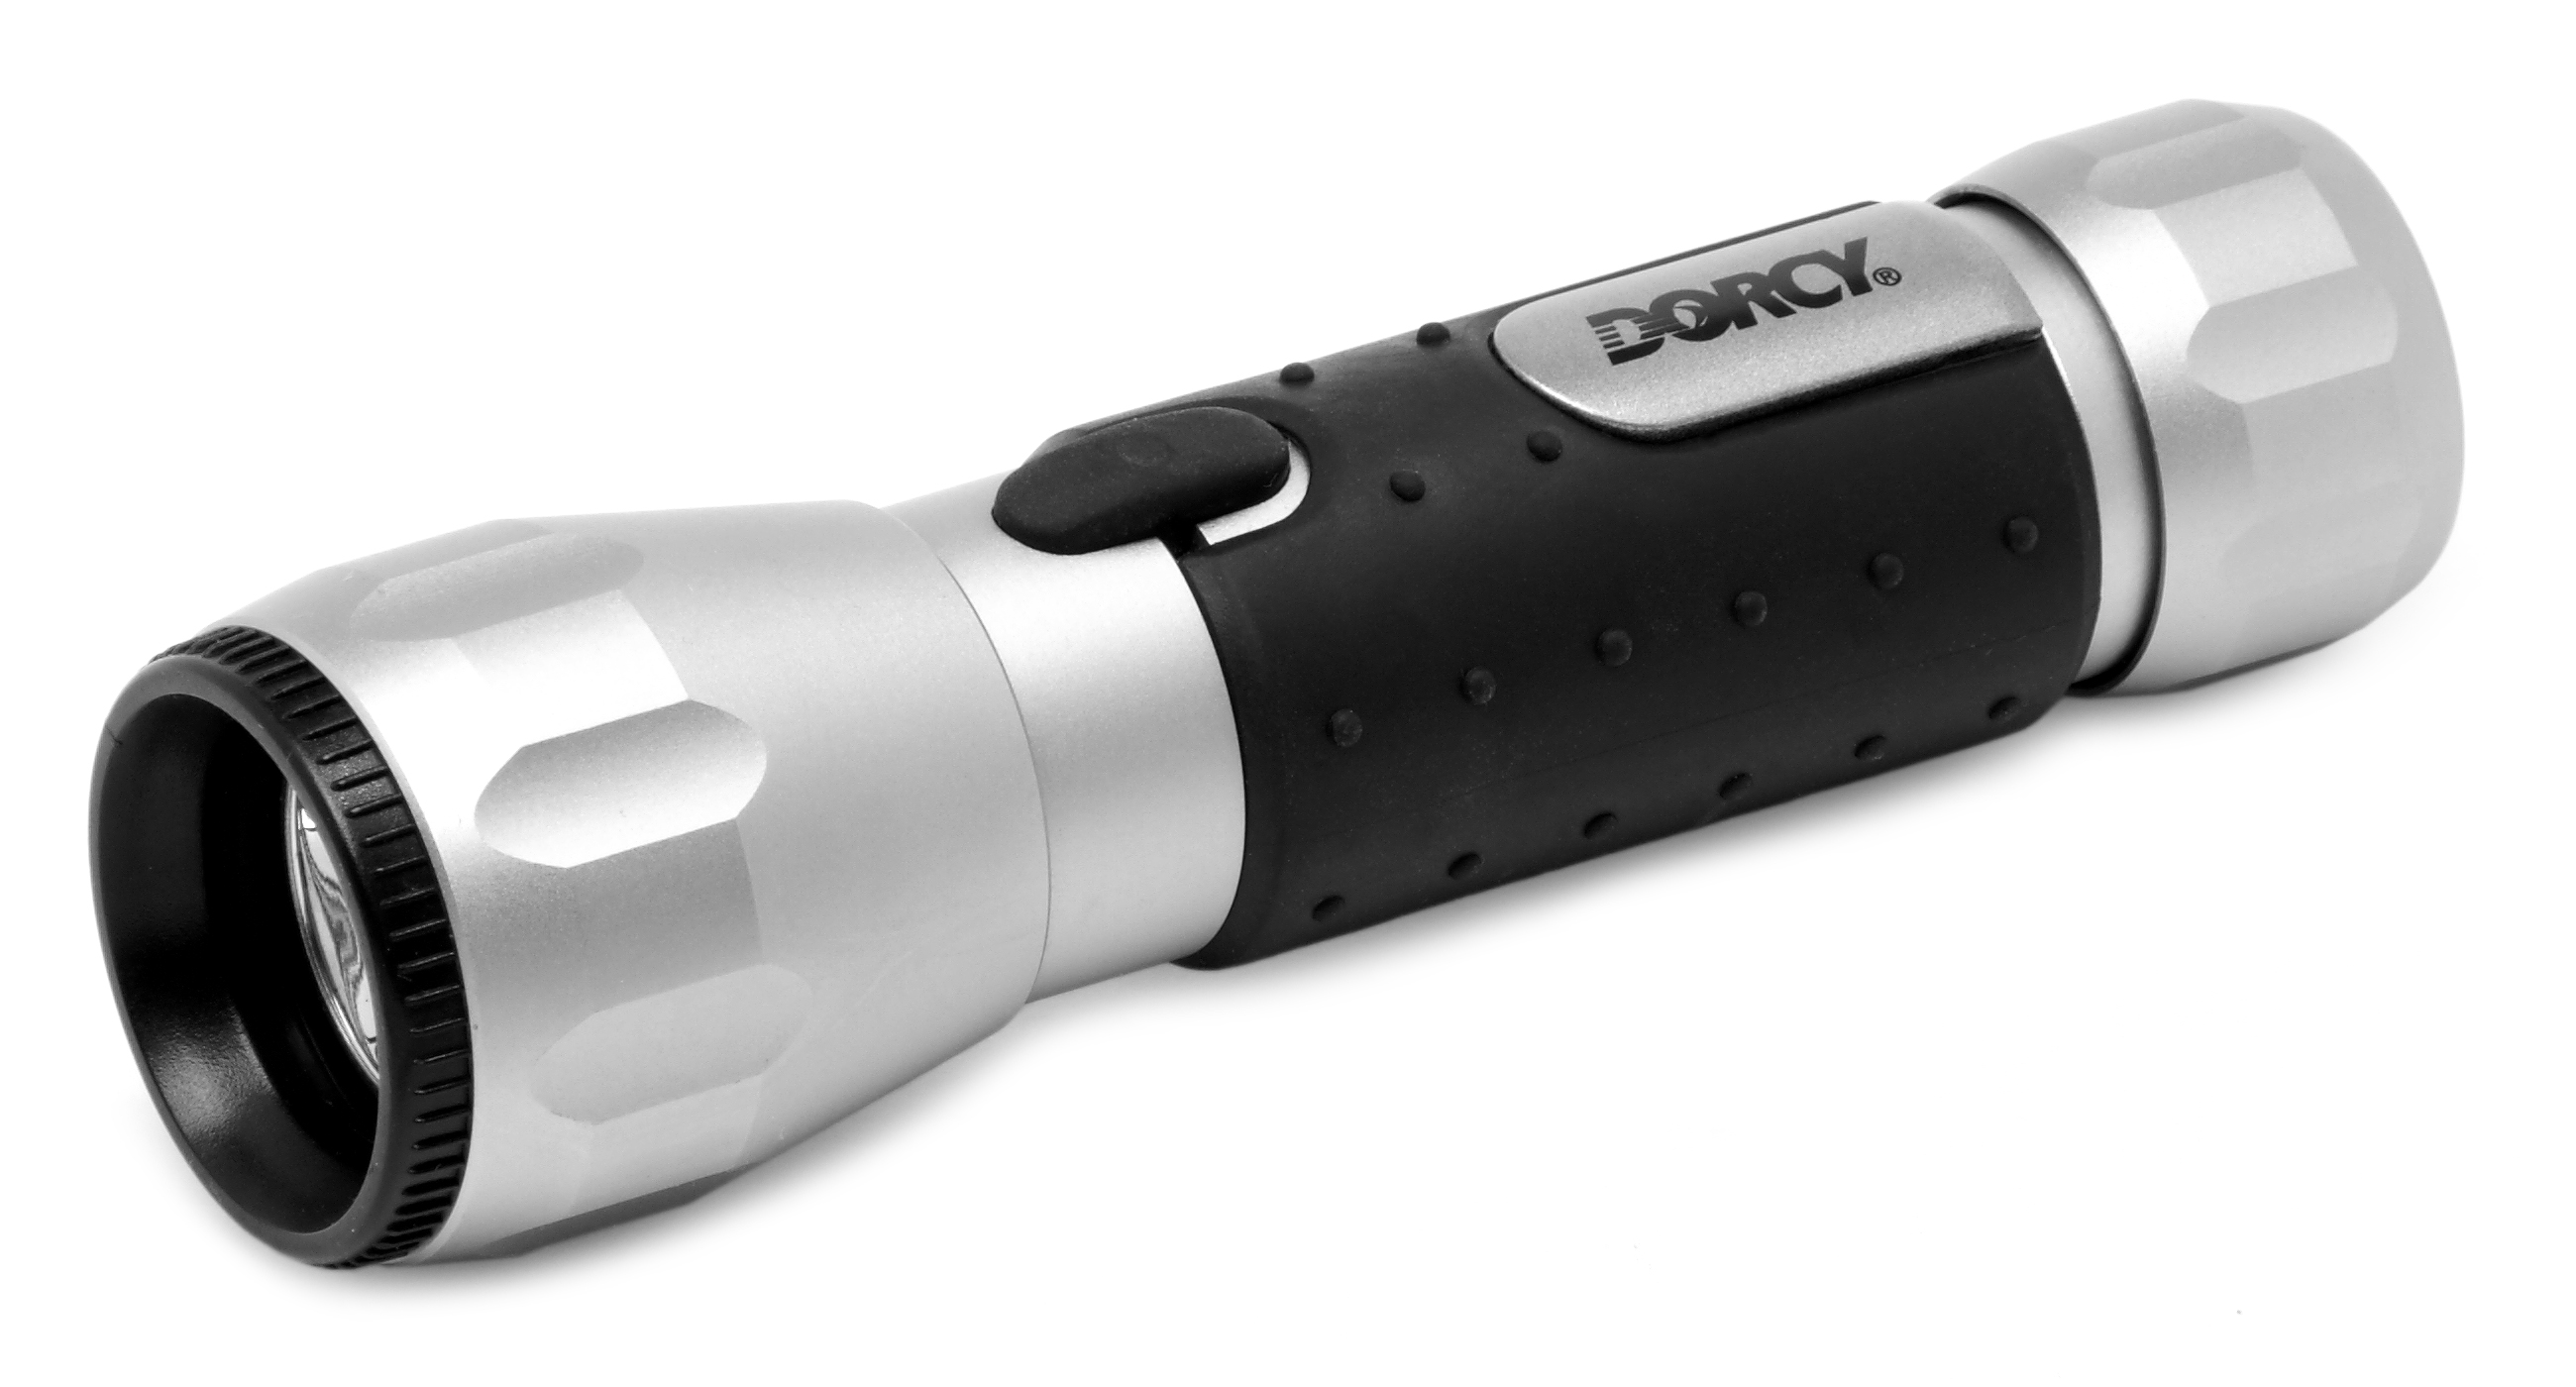 LED flashlight used on ghost hunts